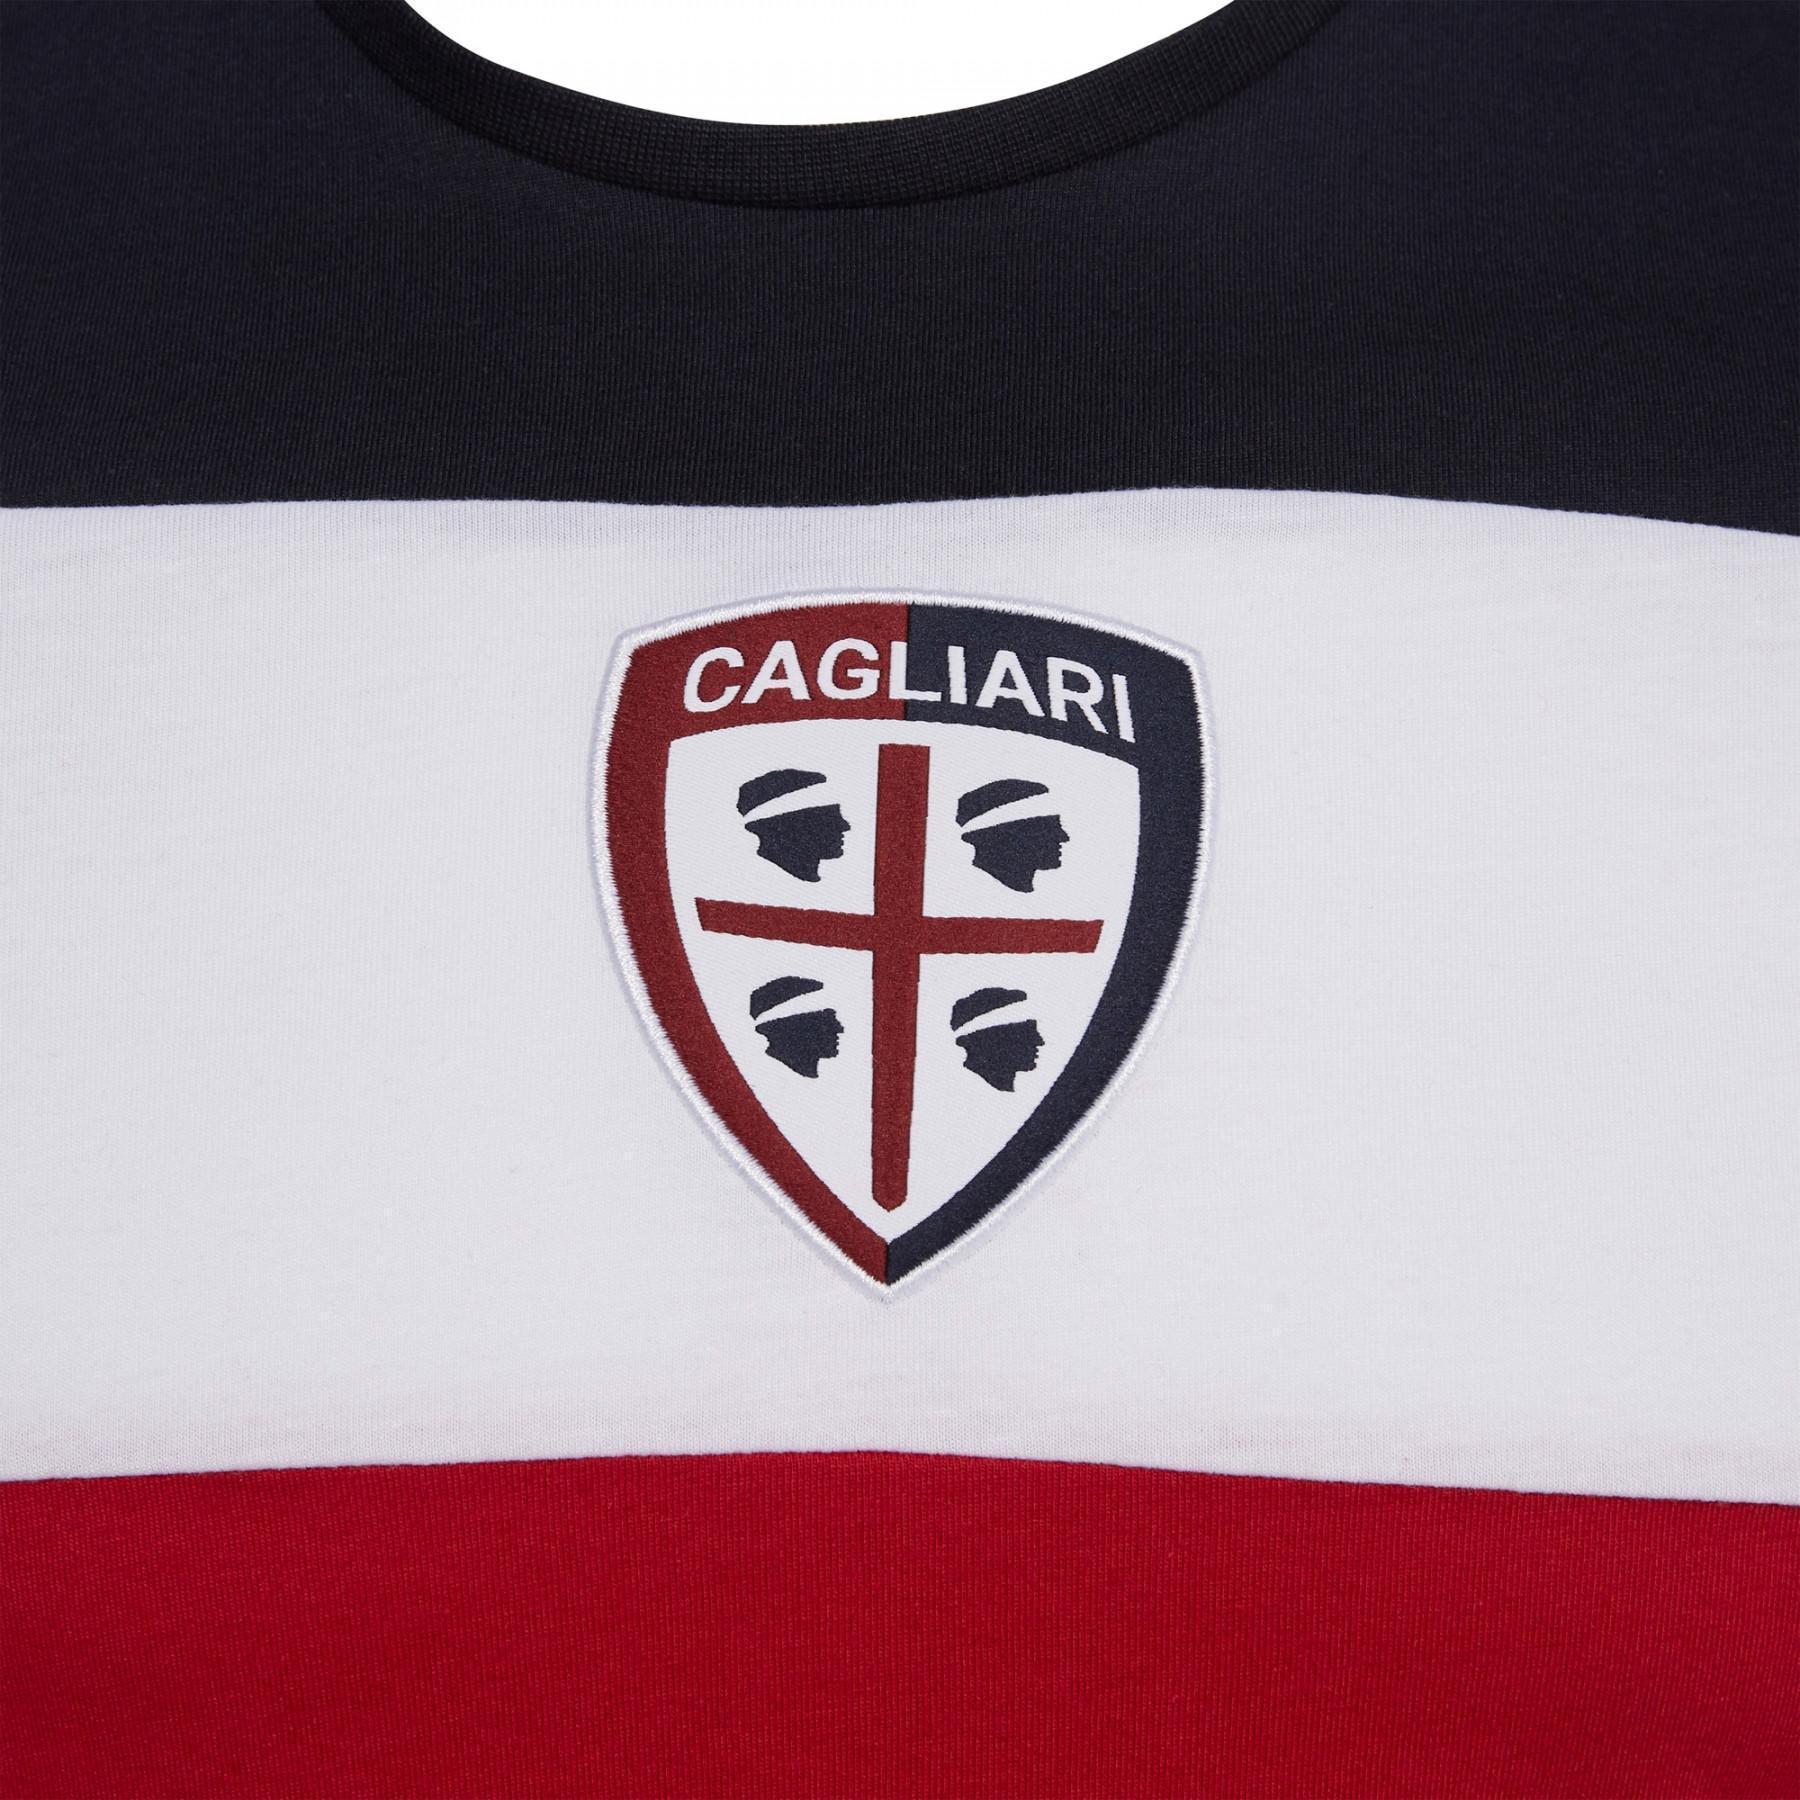 Maglietta Cagliari Calcio bh 3 logo